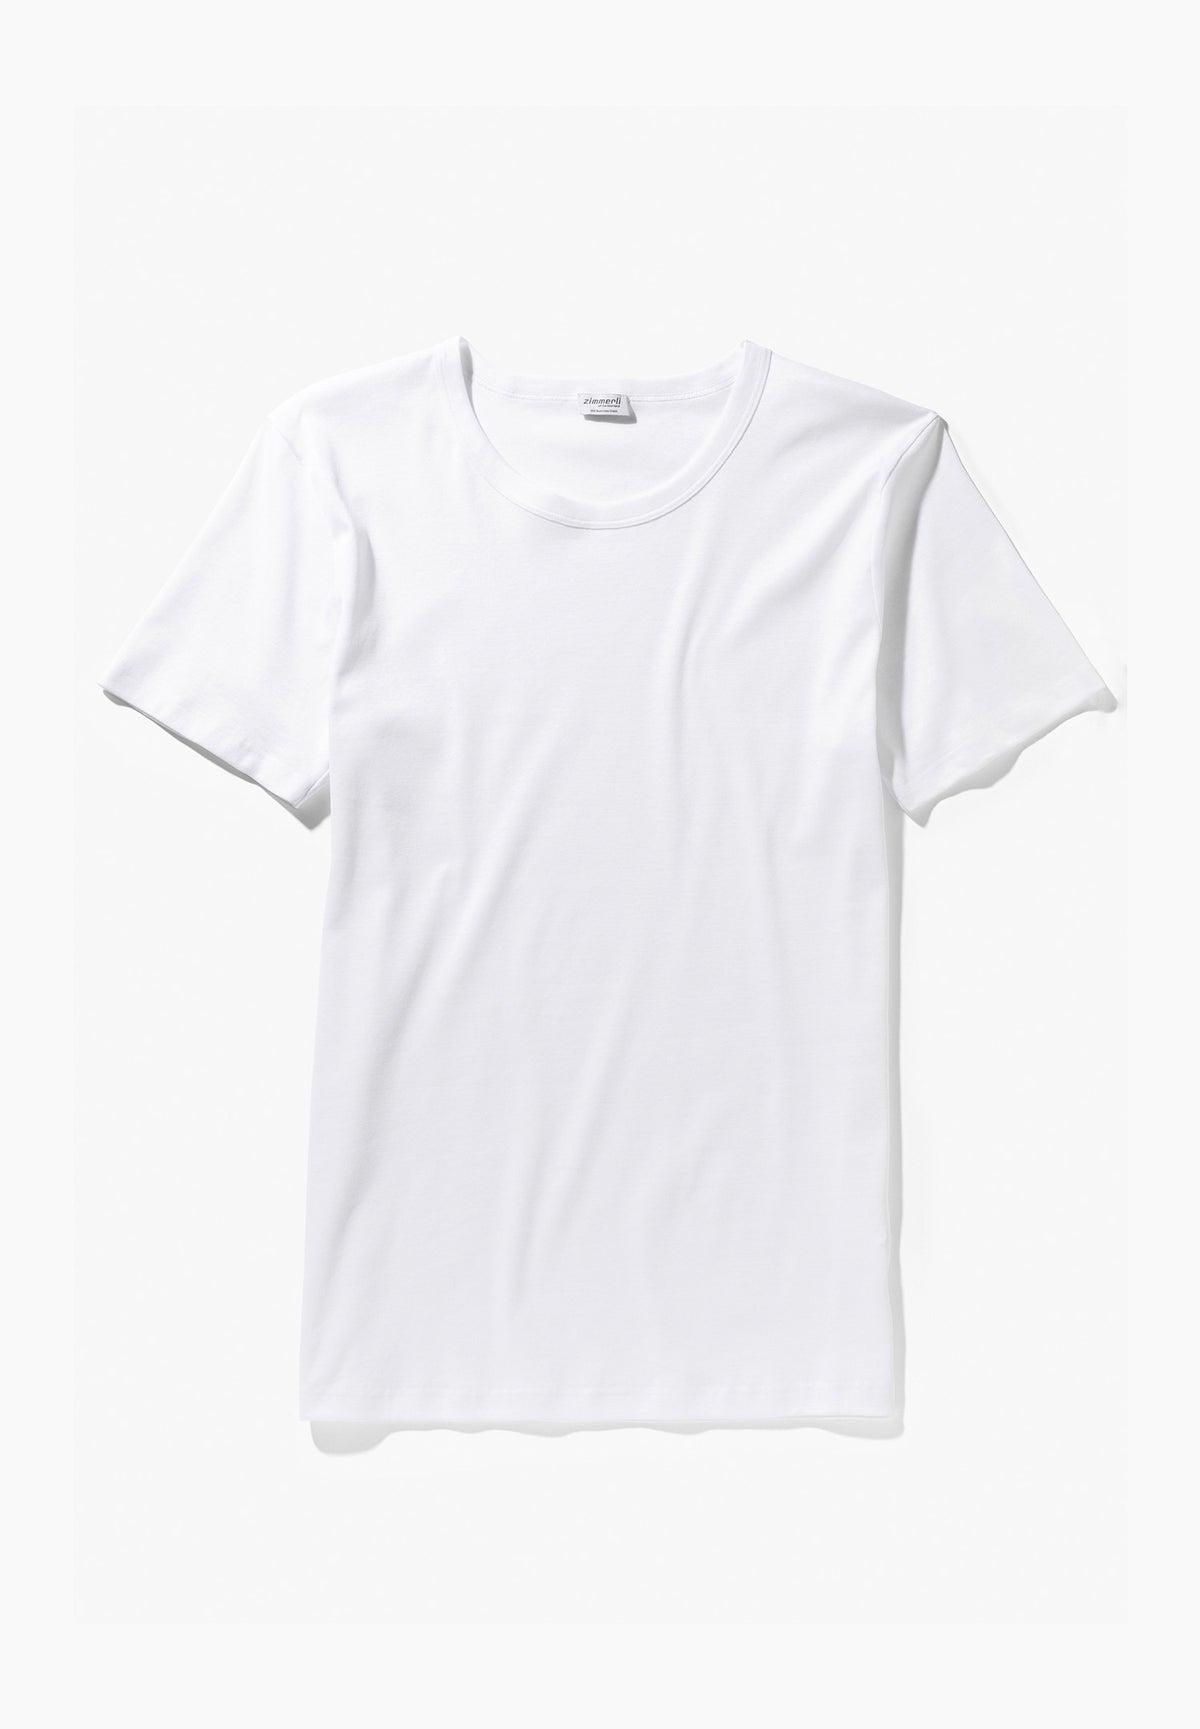 Business Class | T-Shirt kurzarm - white